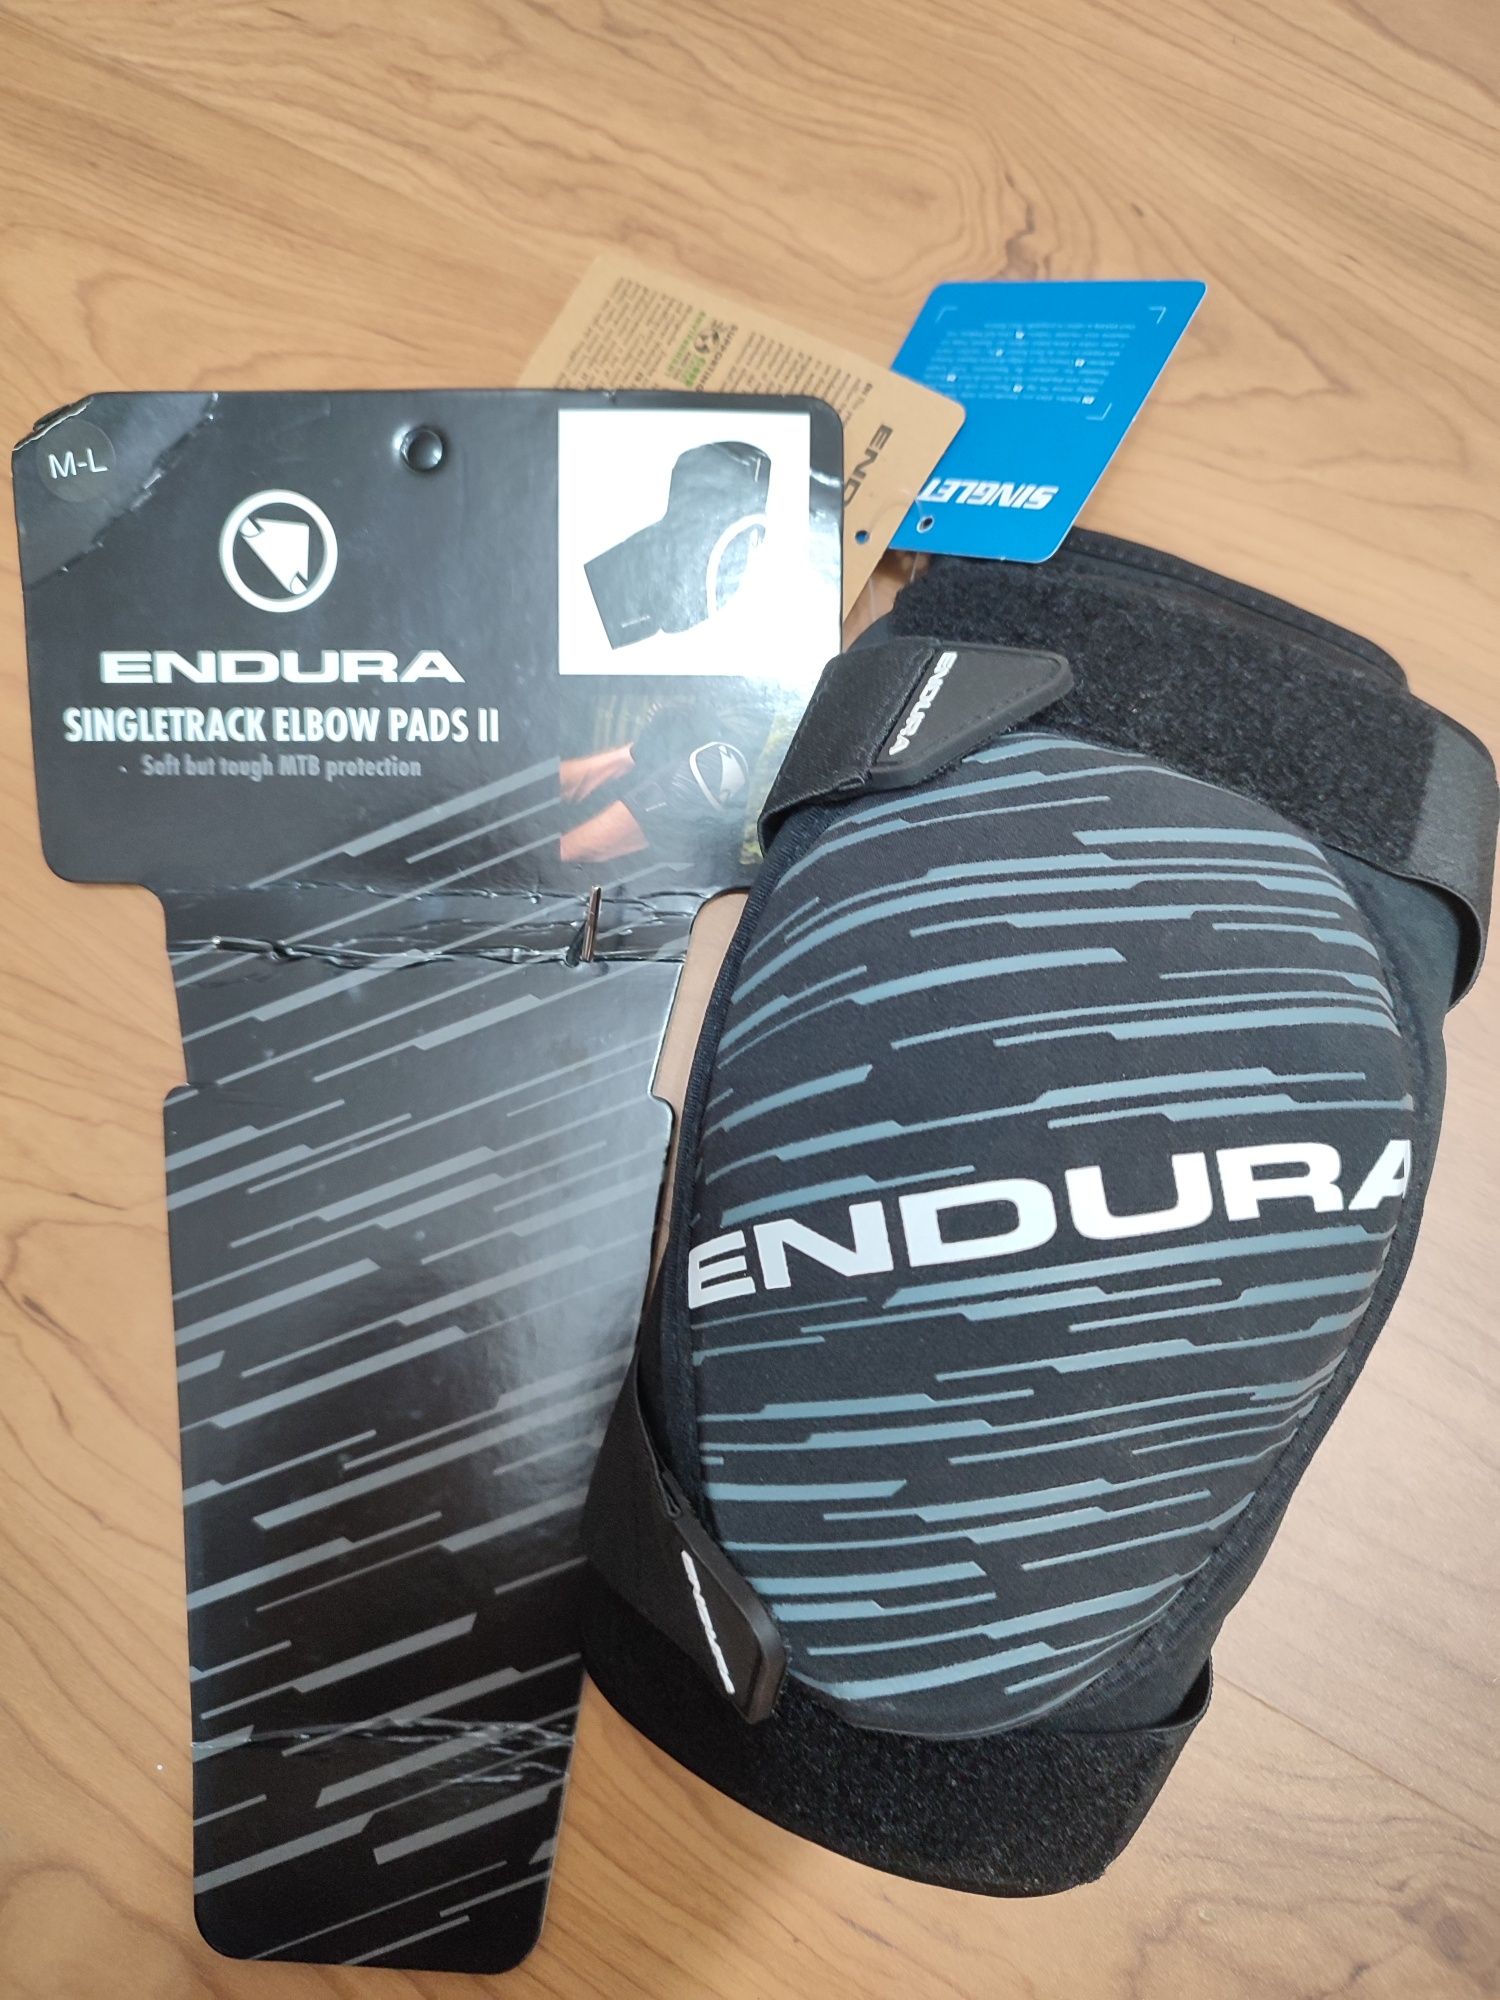 Налокотники для горного велосипеда Endura SingleTrack II M-L